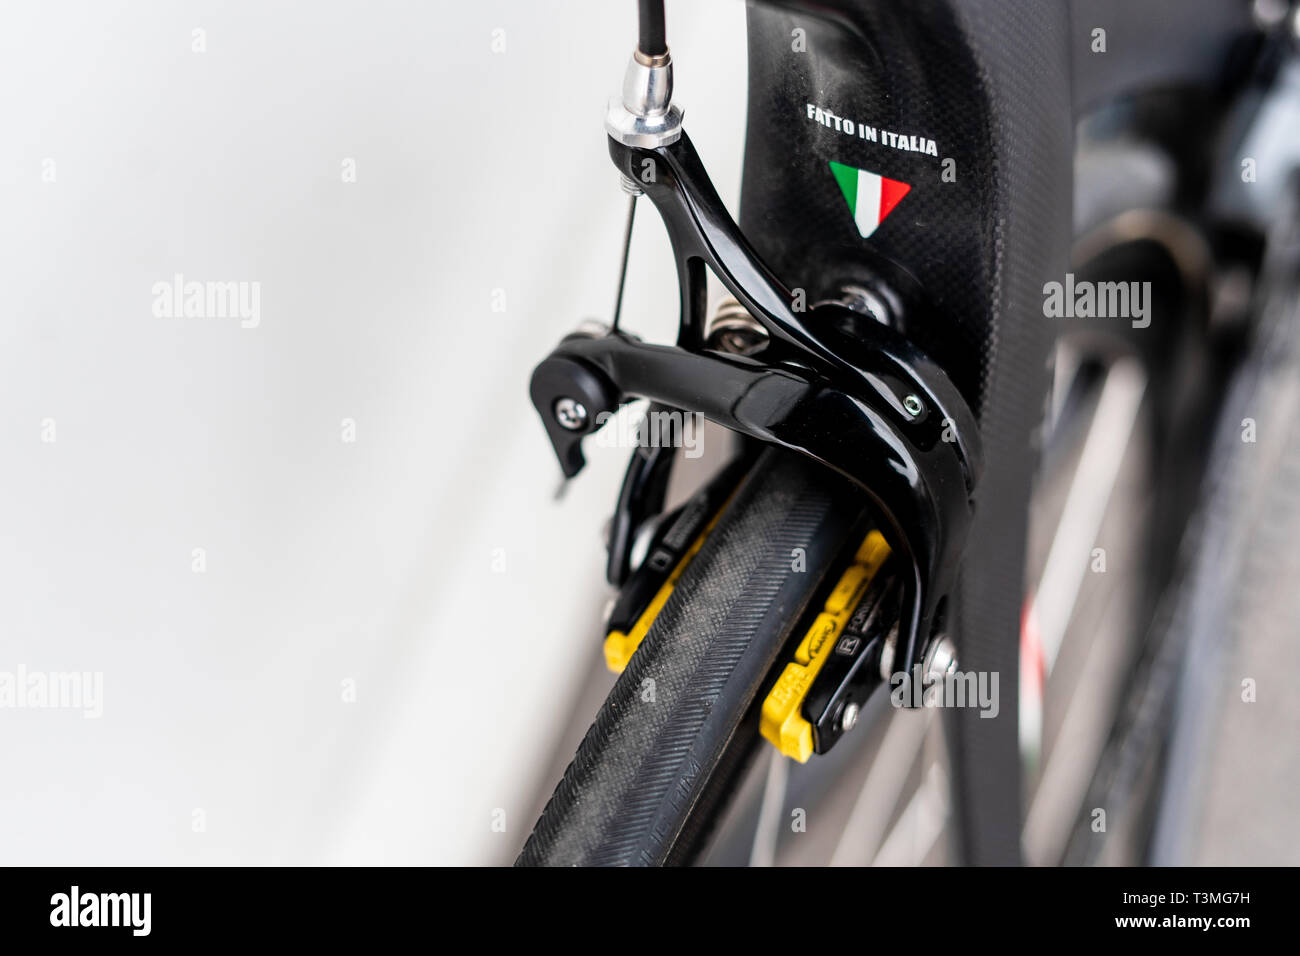 Pinza per bici immagini e fotografie stock ad alta risoluzione - Alamy